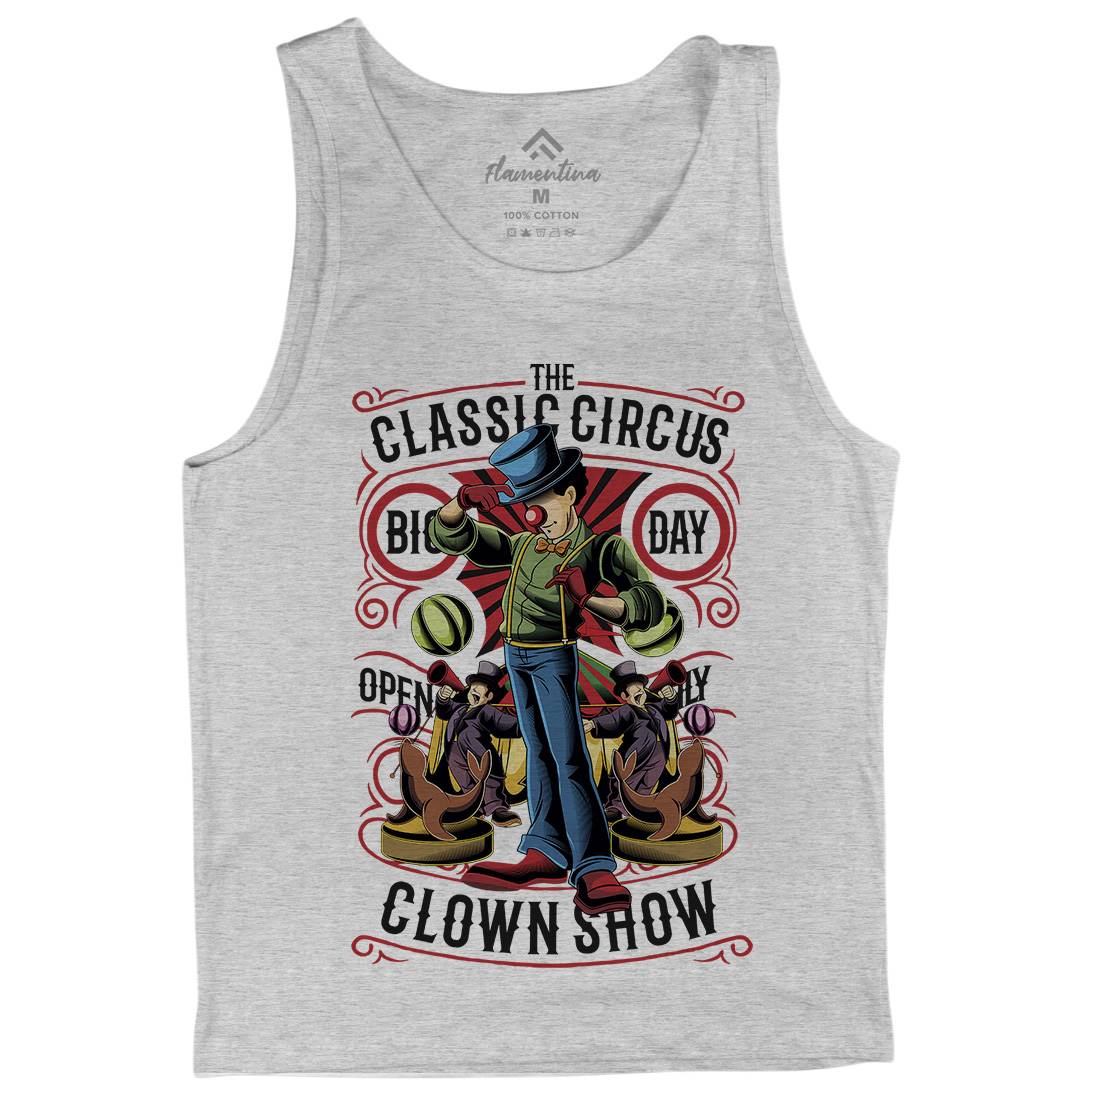 Classic Circus Mens Tank Top Vest Retro C461